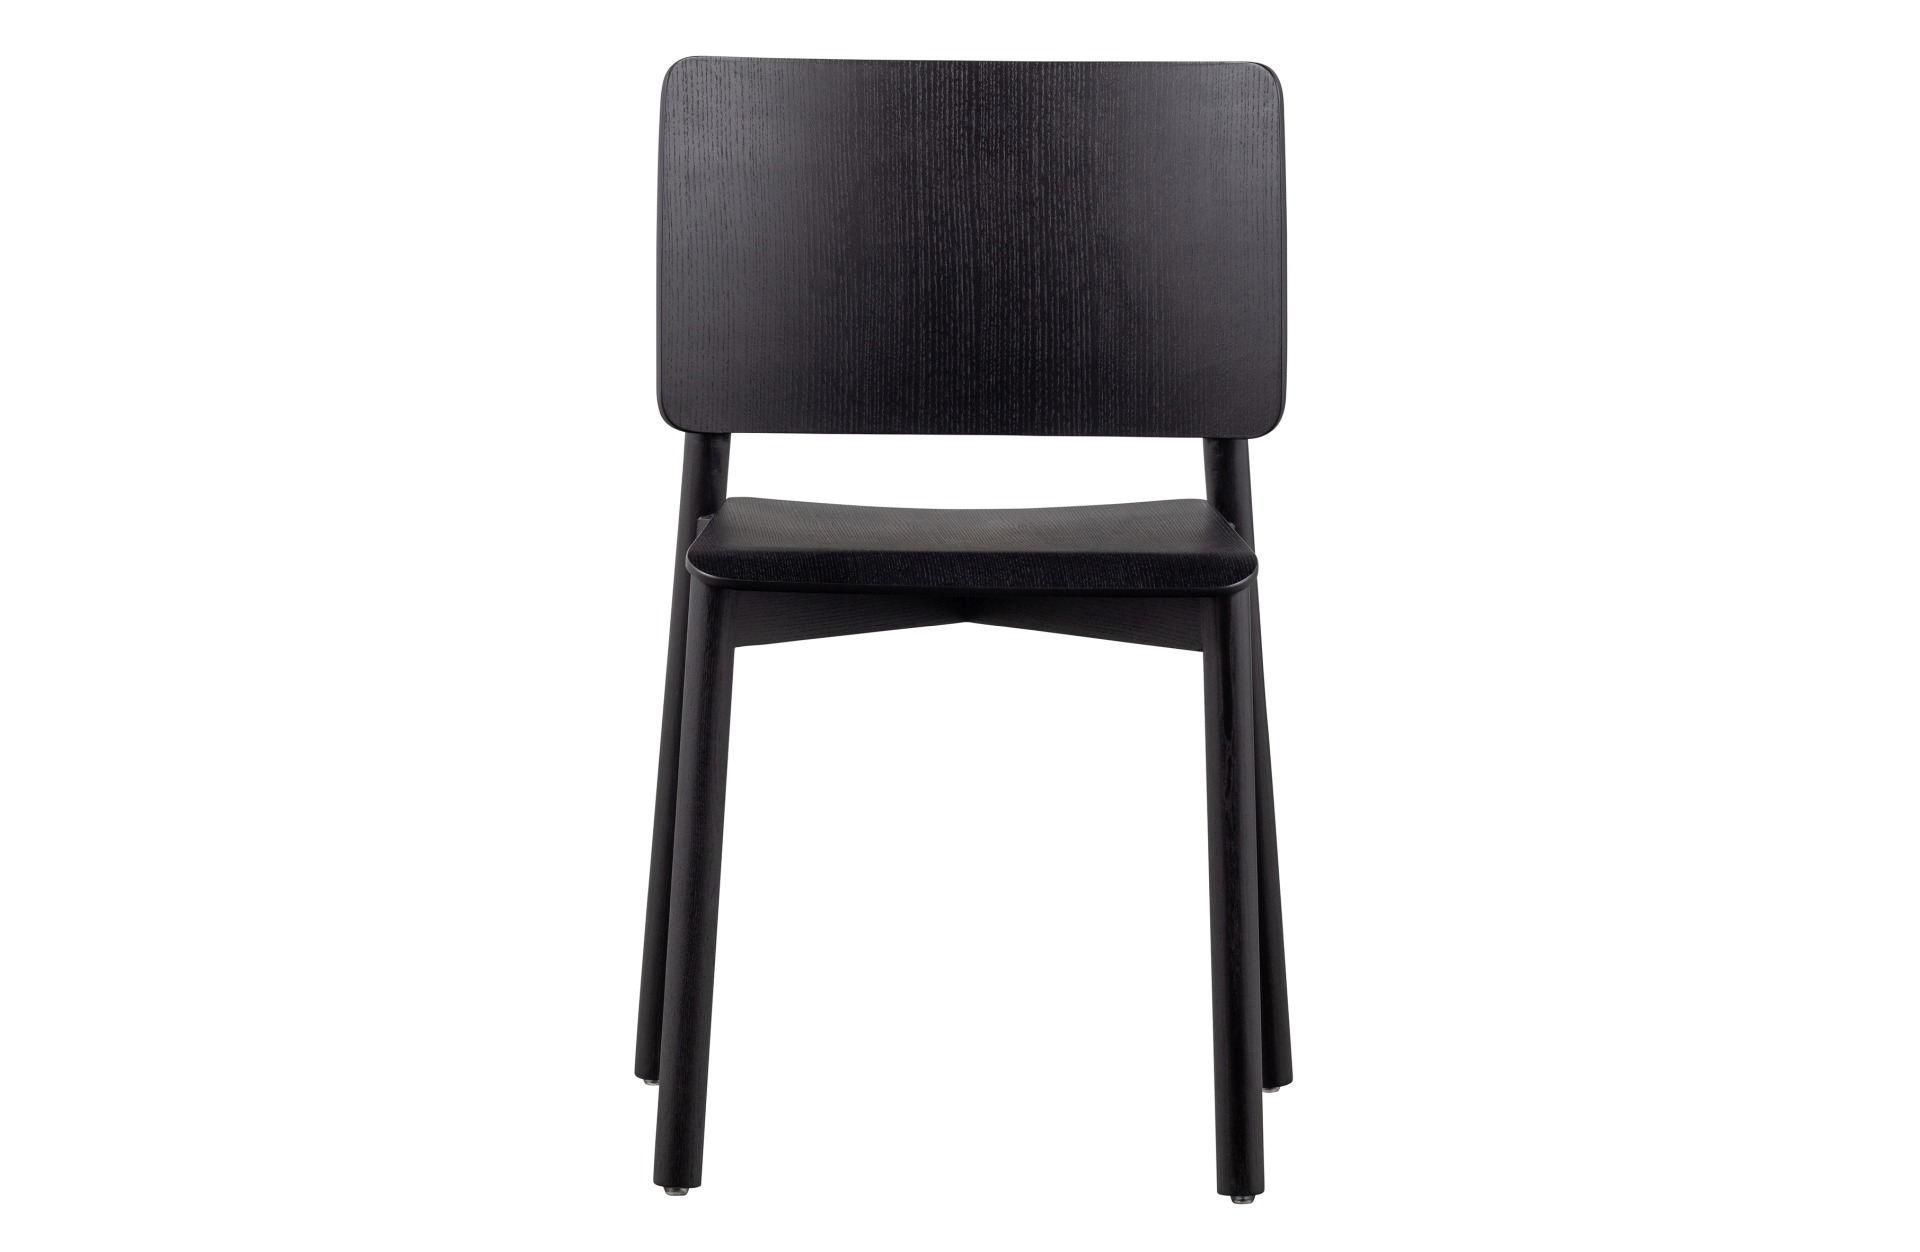 Der Esszimmerstuhl Karel wurde aus Eschenholz gefertigt und besitzt eine schwarze Farbe. Der Stuhl ist in zwei verschiedenen Varianten erhältlich